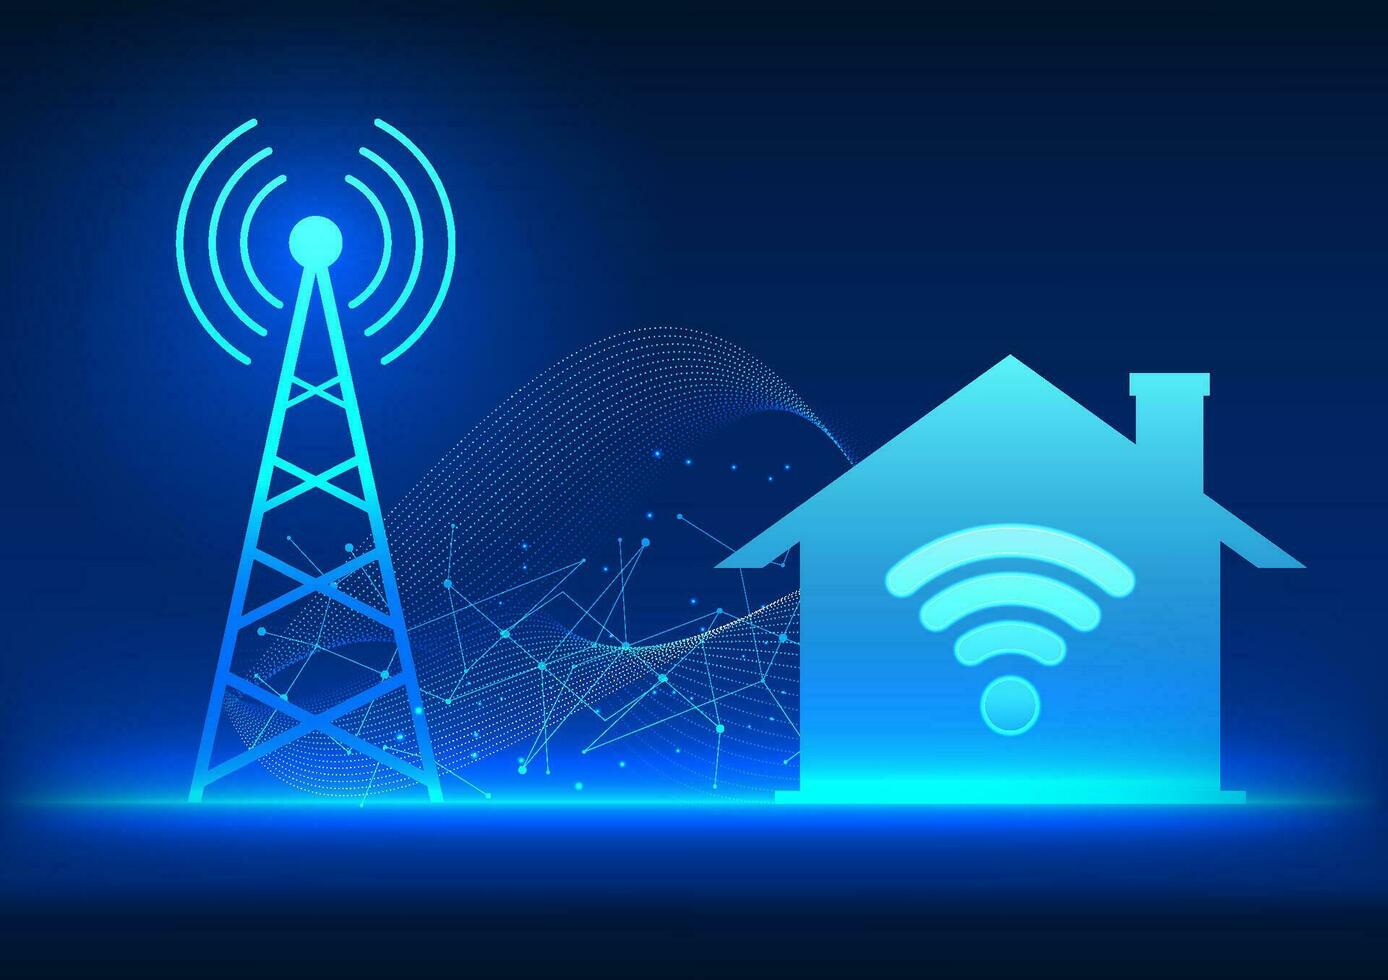 transmissie toren technologie het is een technologie dat stuurt een signaal in de huishouden. bekwaam naar communiceren en toegang naar de internet en vermaak vector